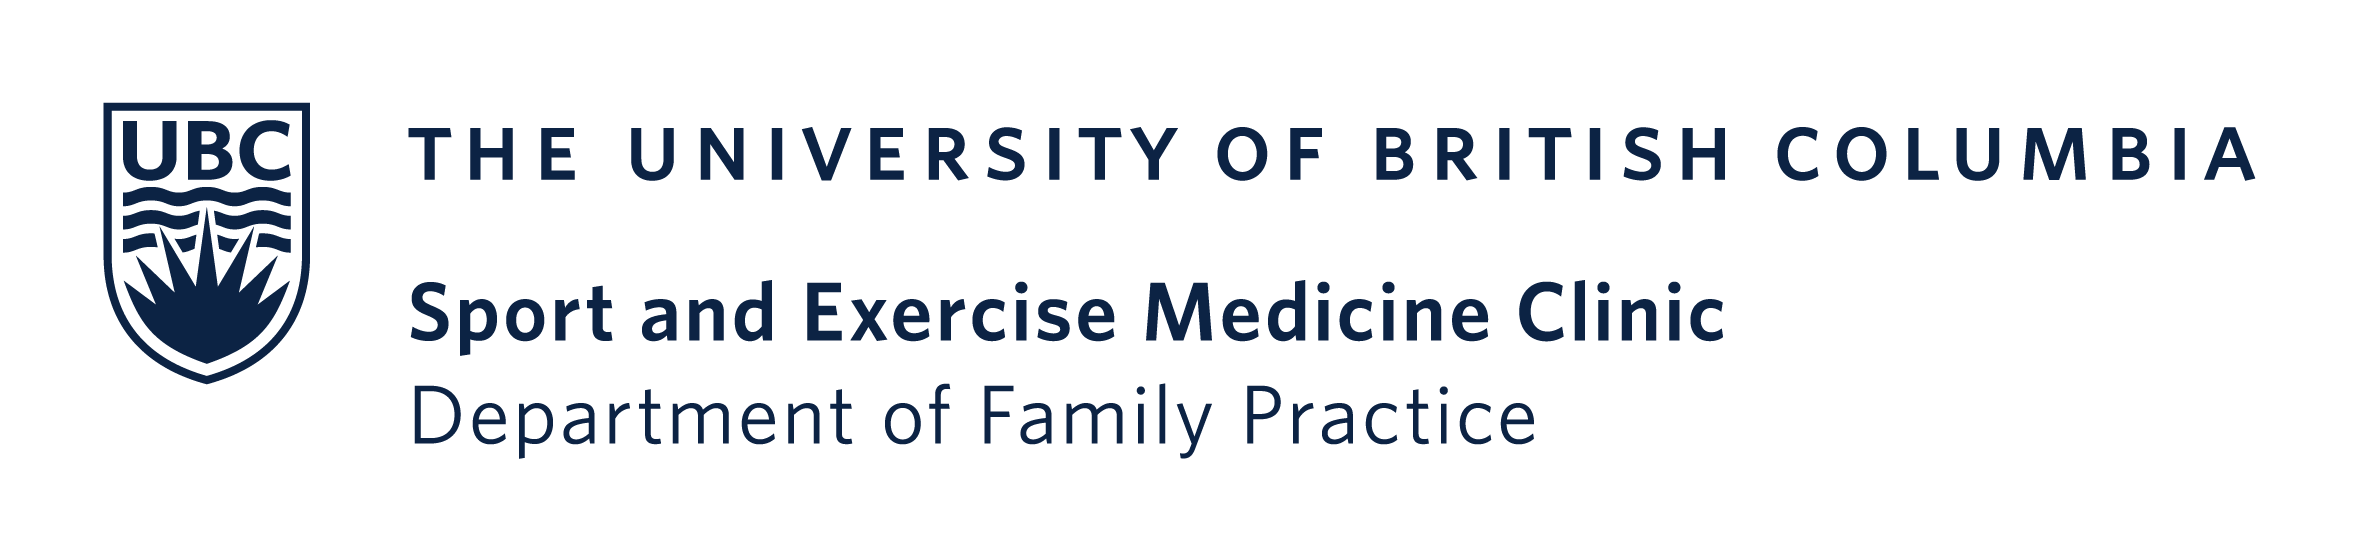 Sponsor UBC Medicine